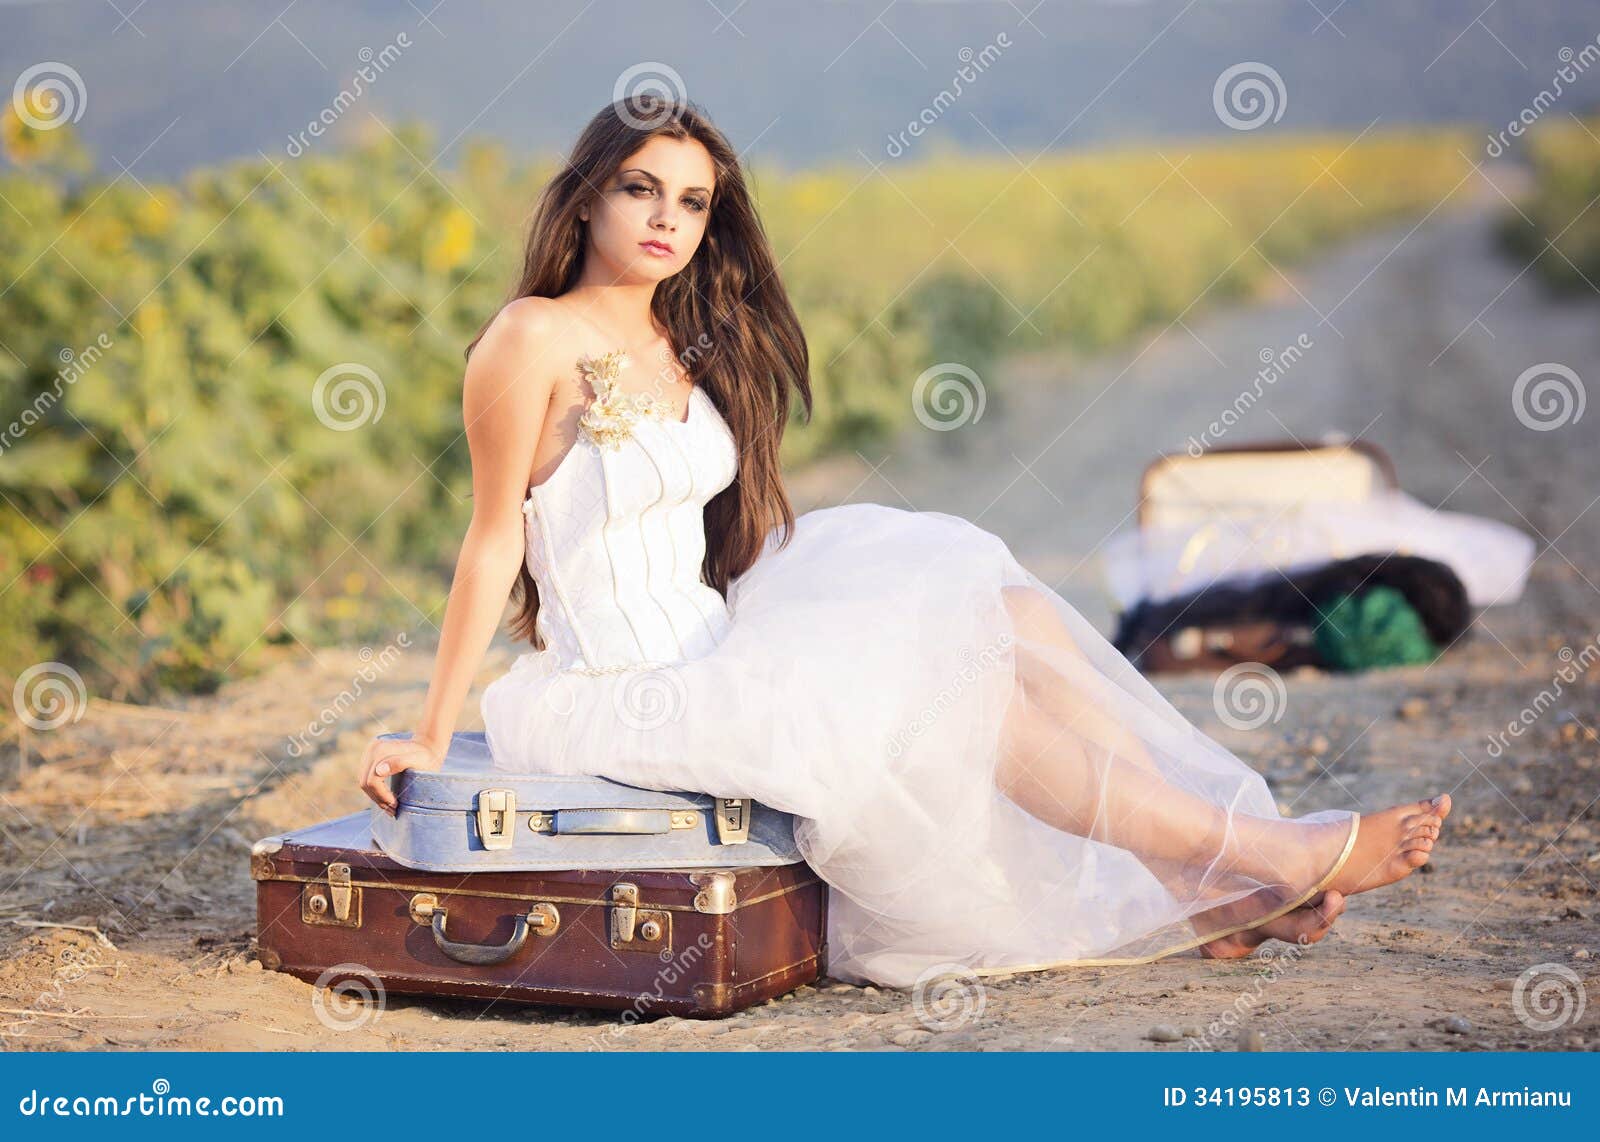 runaway bride